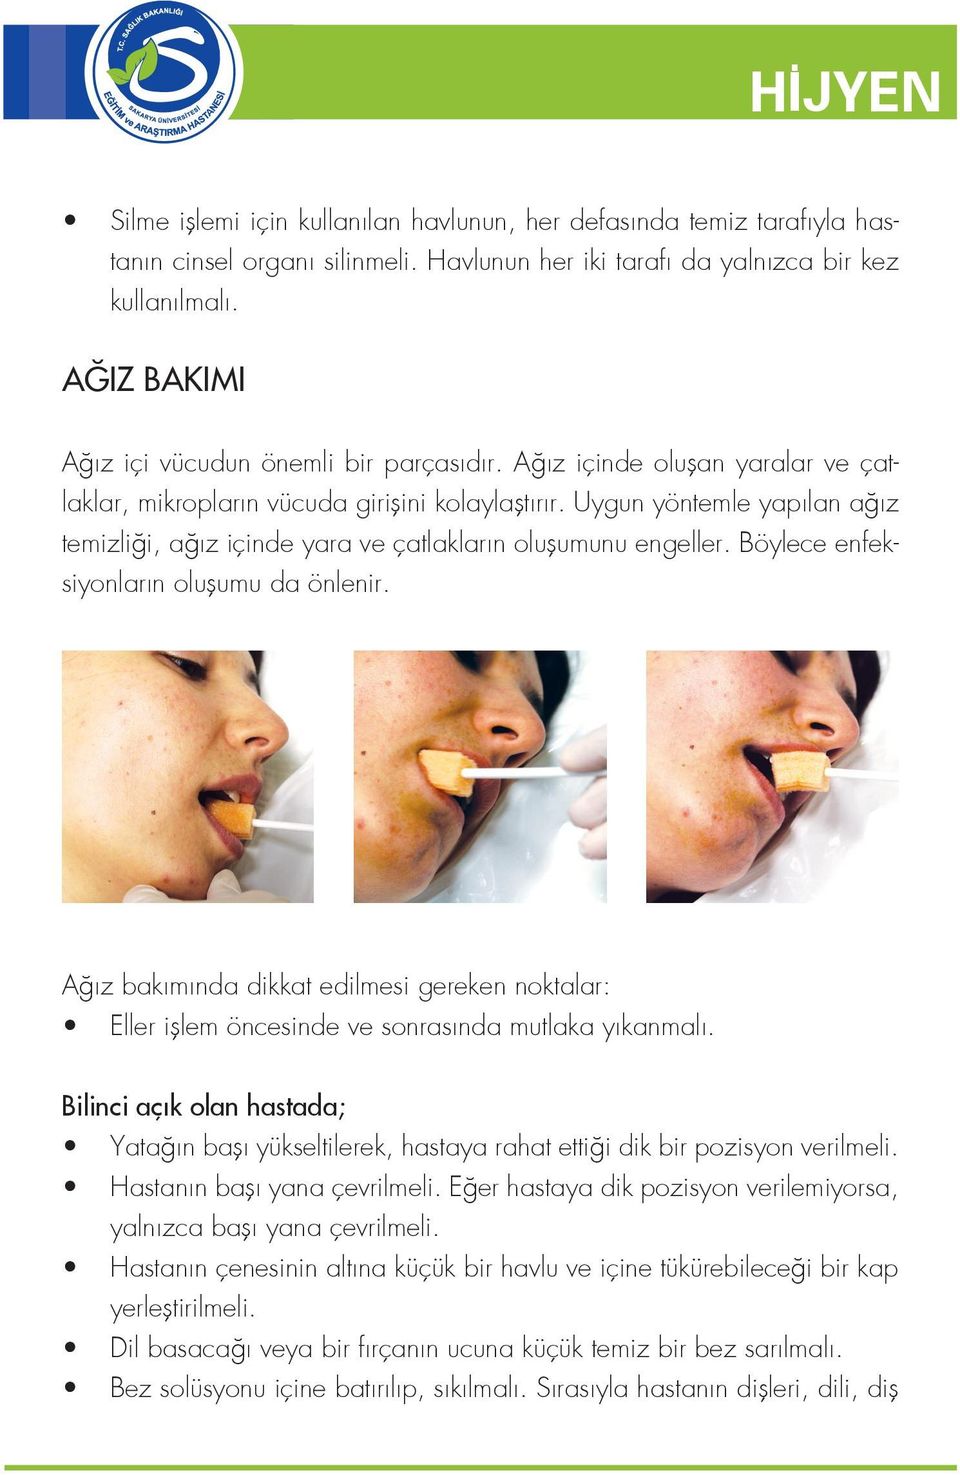 Uygun yöntemle yapılan ağız temizliği, ağız içinde yara ve çatlakların oluşumunu engeller. Böylece enfeksiyonların oluşumu da önlenir.